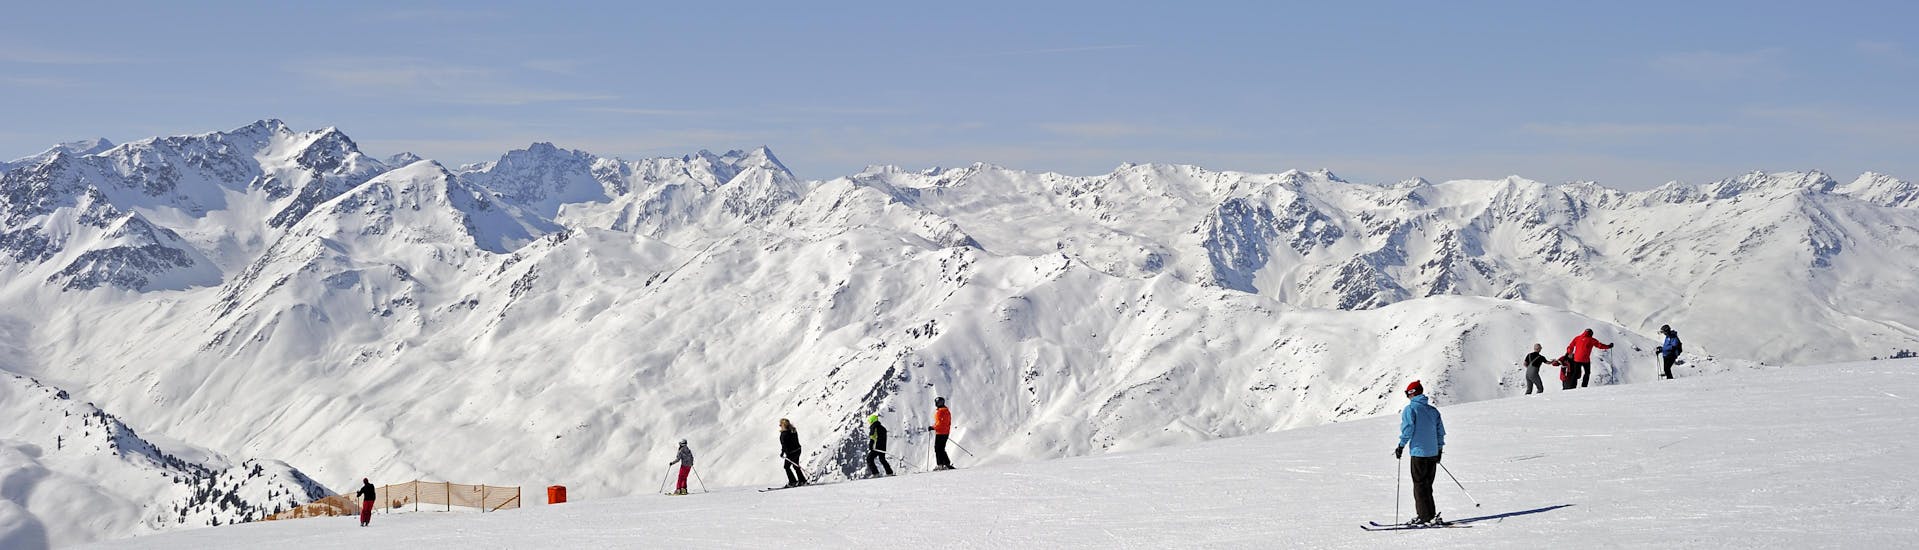 Adulti e bambini che sciano nella stazione sciistica di Axamer Lizum.